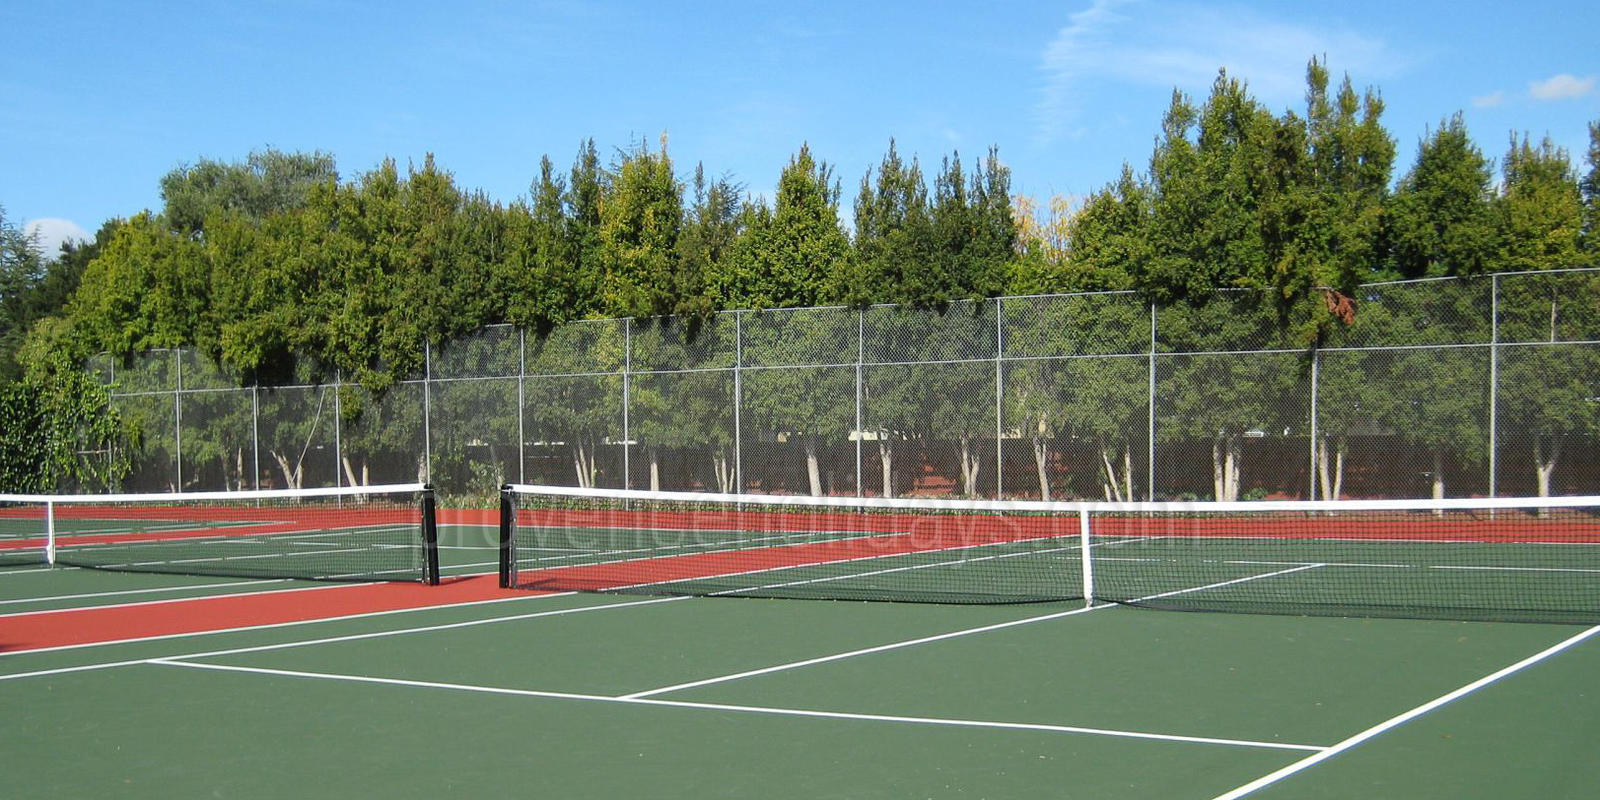 Tennis Club Le Parc - 0